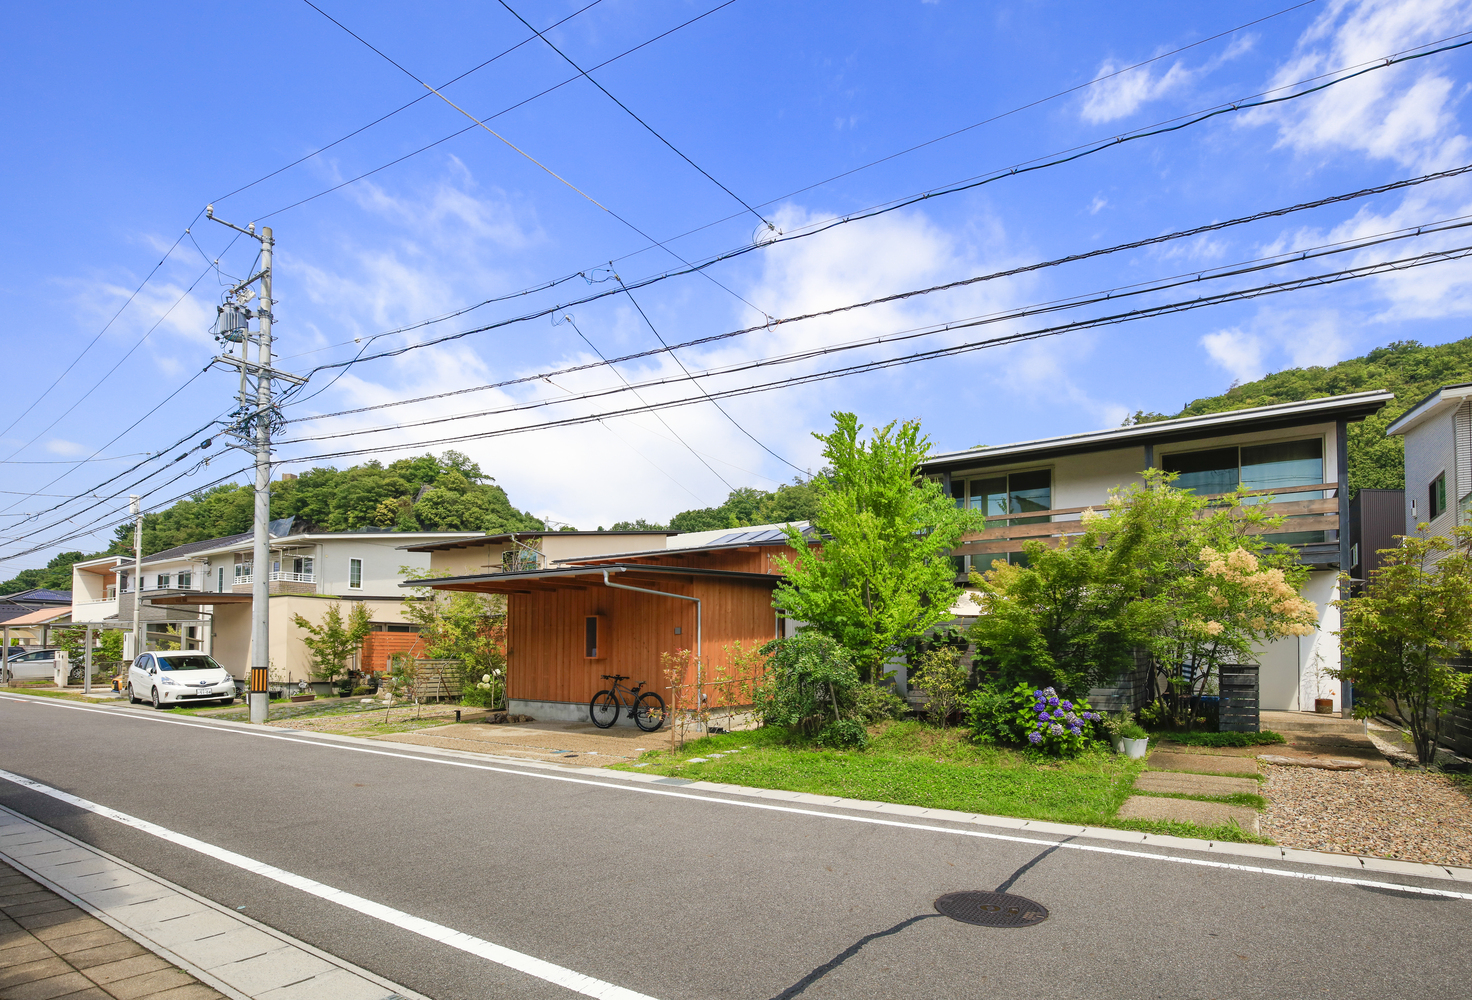 Đội ngũ KTS của Plan21 Studio vừa hoàn thành dự án thiết kế công trình nhà ở xinh xắn tại thành phố Kakamigahara thuộc tỉnh Gifu, Nhật Bản.